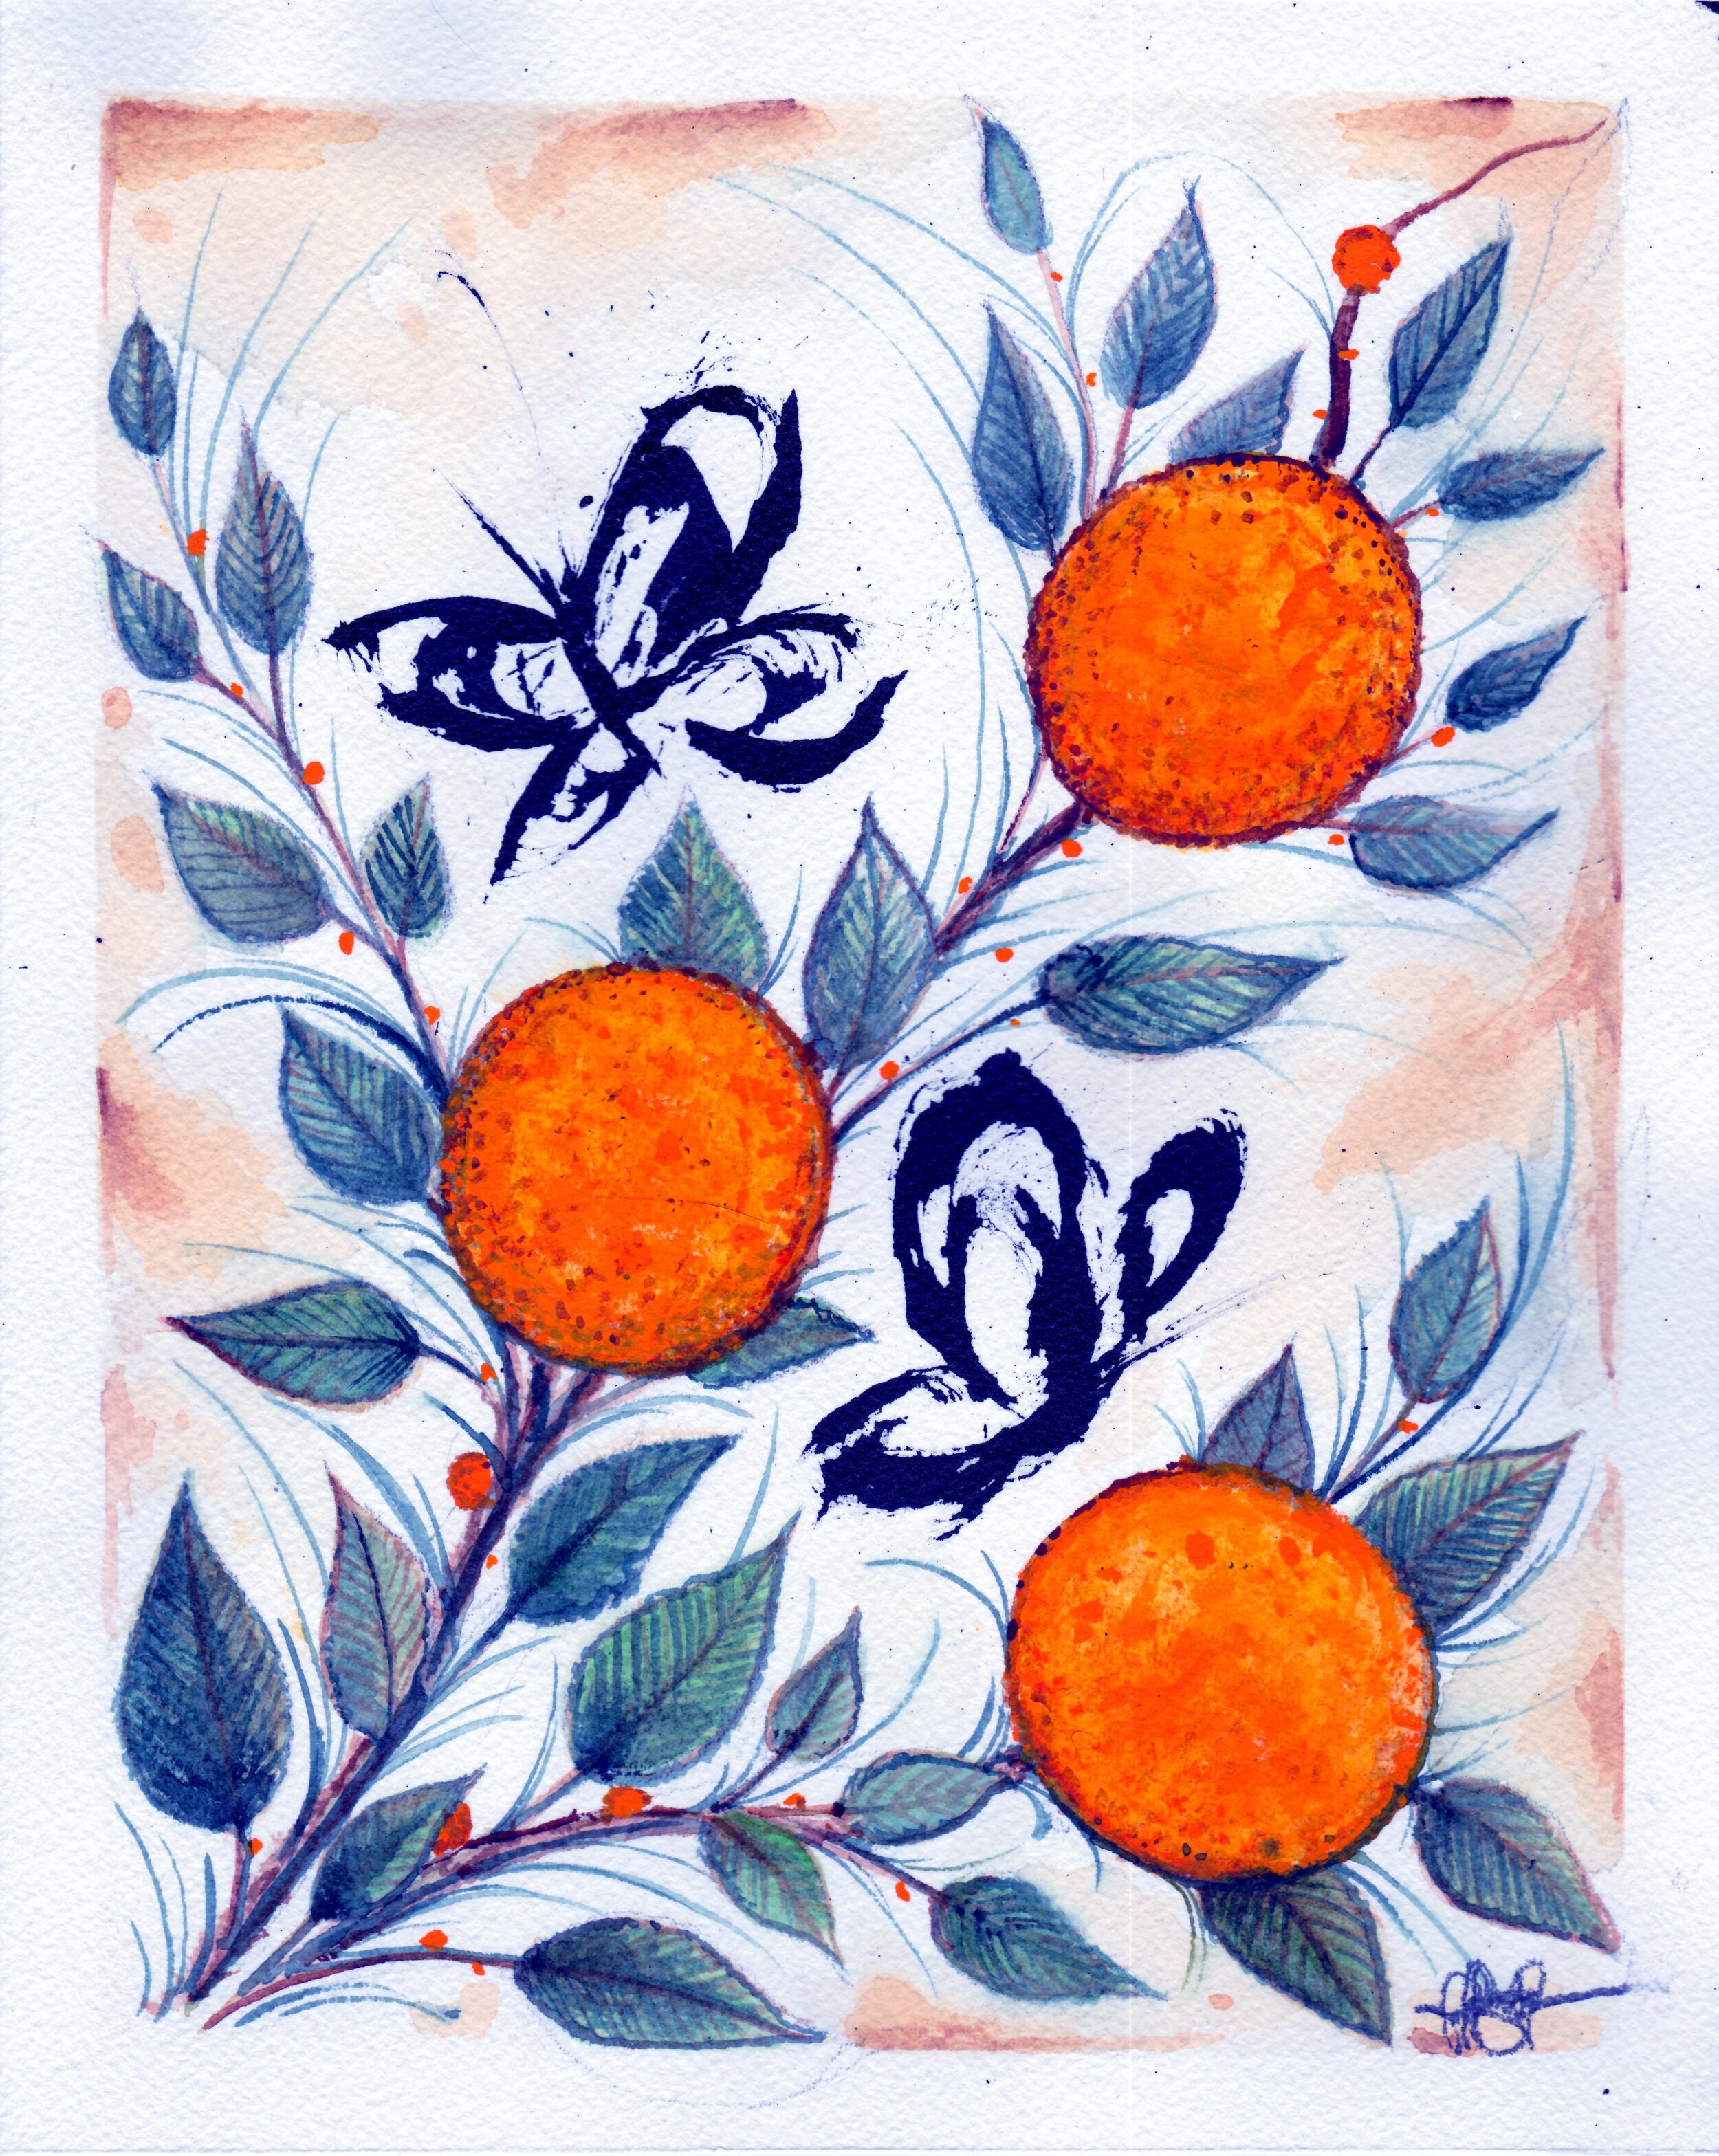 Jeffery-Page-Portfolio-Los-Angeles-Artisit-Tattoo-Avant-Garde-Provocateur-LA-DTLA_South-Bay-California-Morning-Coffee-Projects-Orange-Tree-Butterflies-Oranges.jpeg